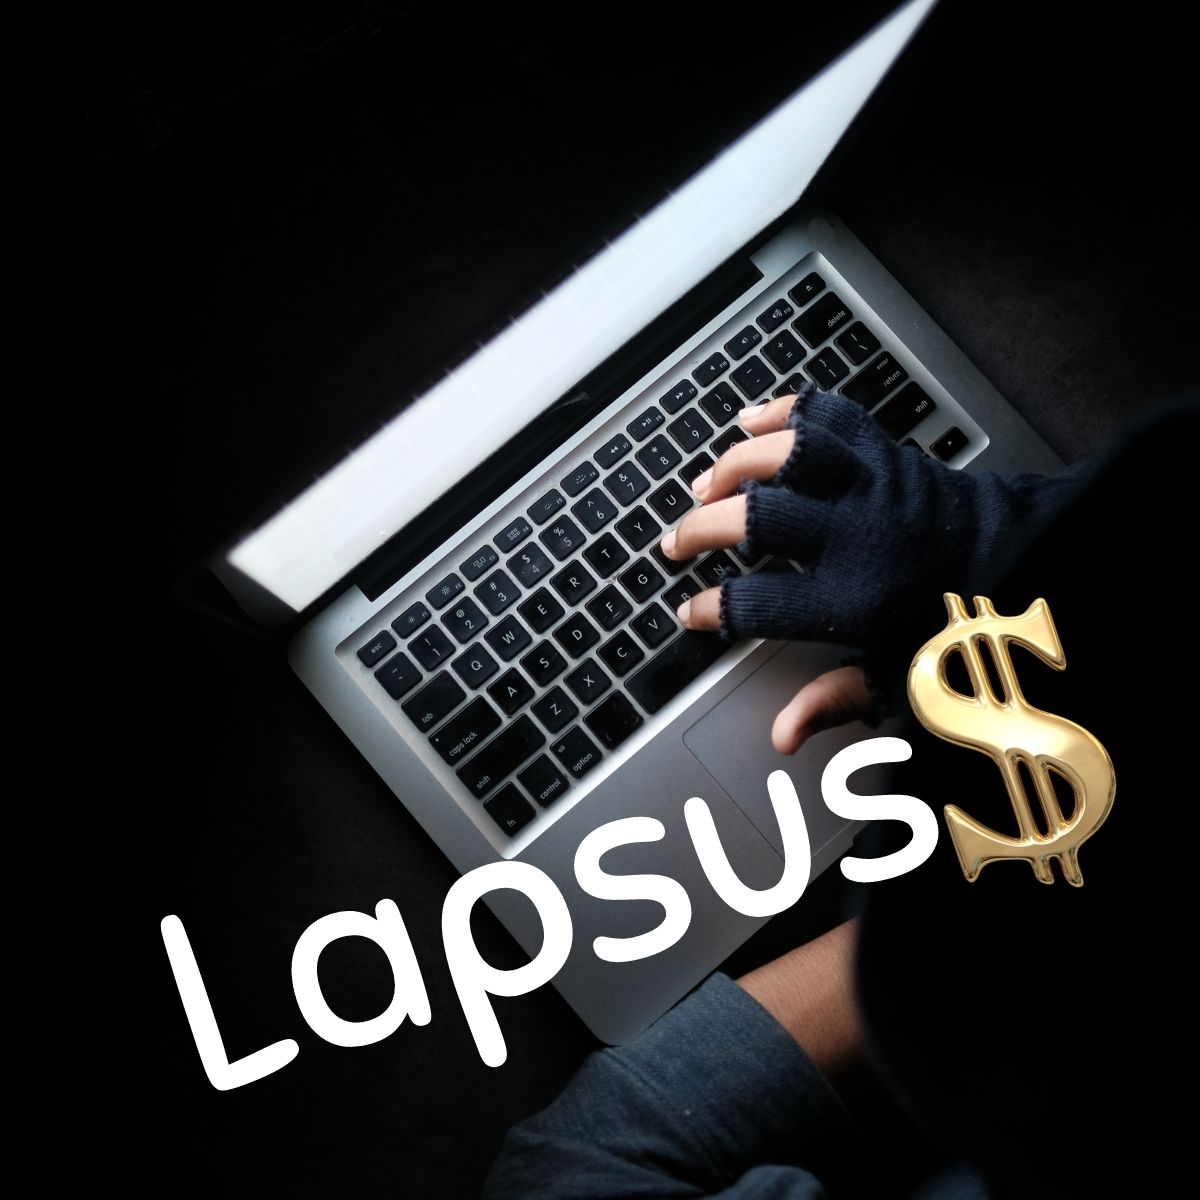 Lapsus$ | Confidence IT